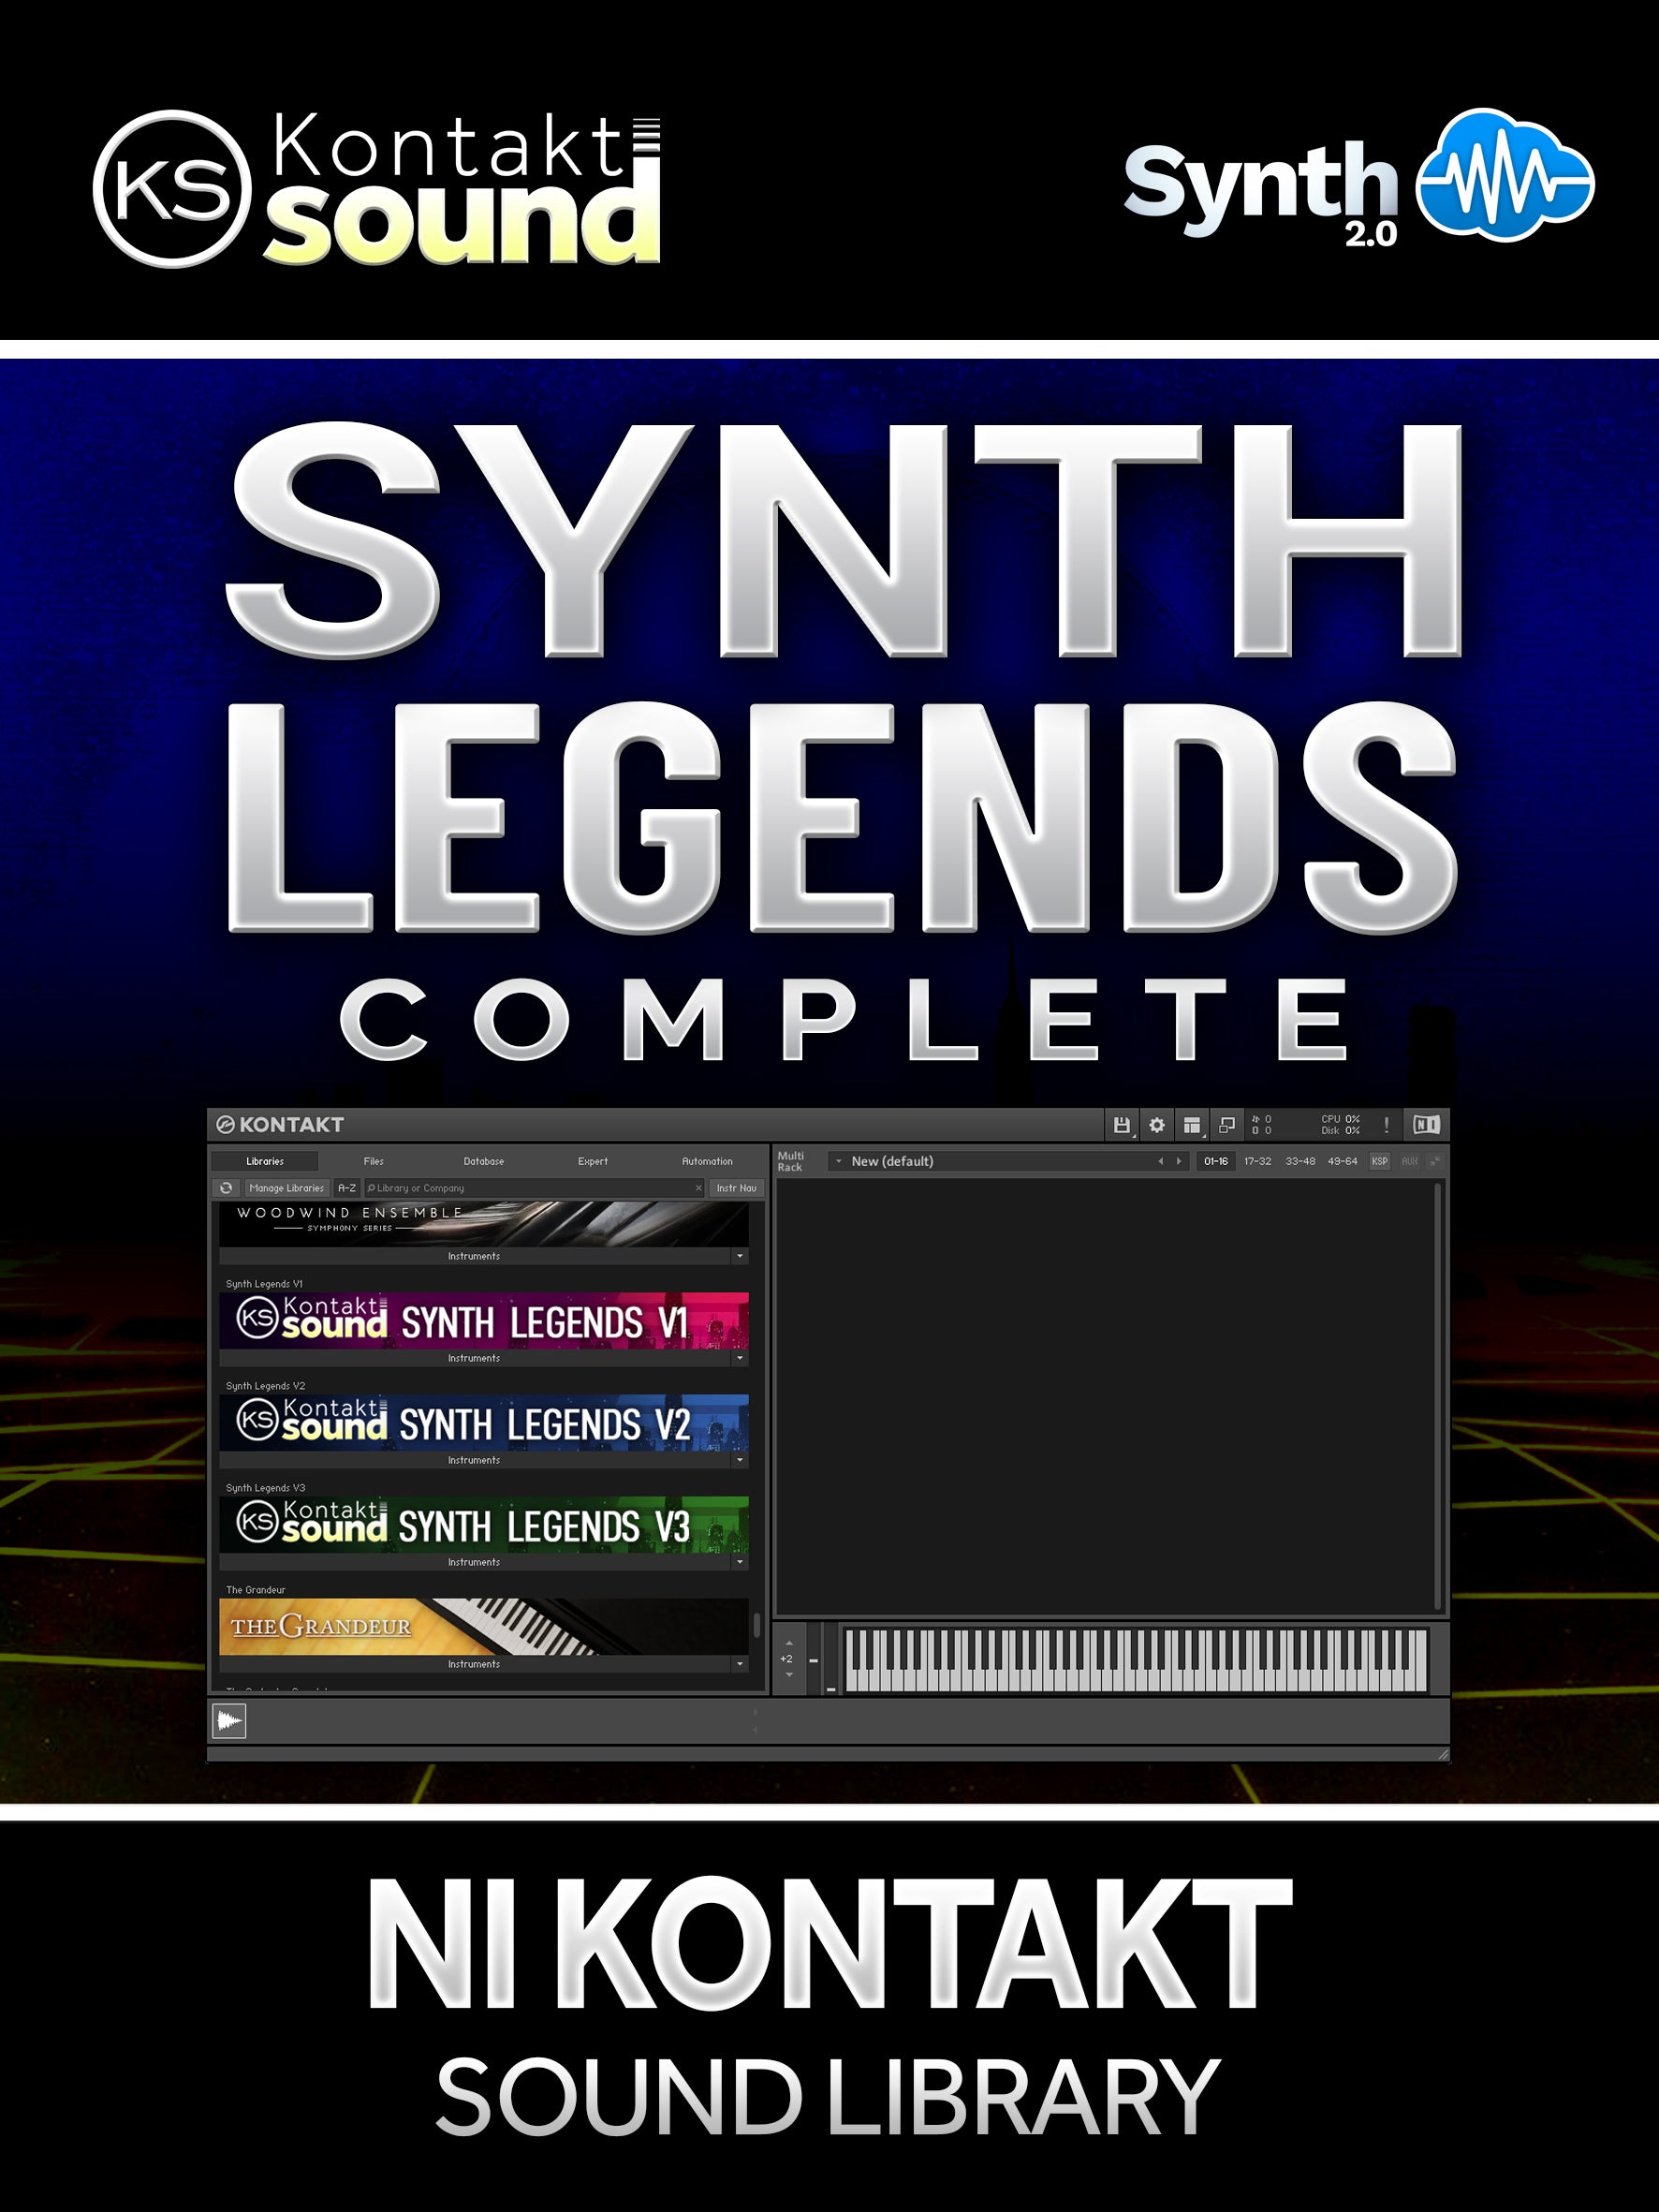 SLG007 - Complete Synth Legends - Native Instruments Kontakt ( over 140 presets )